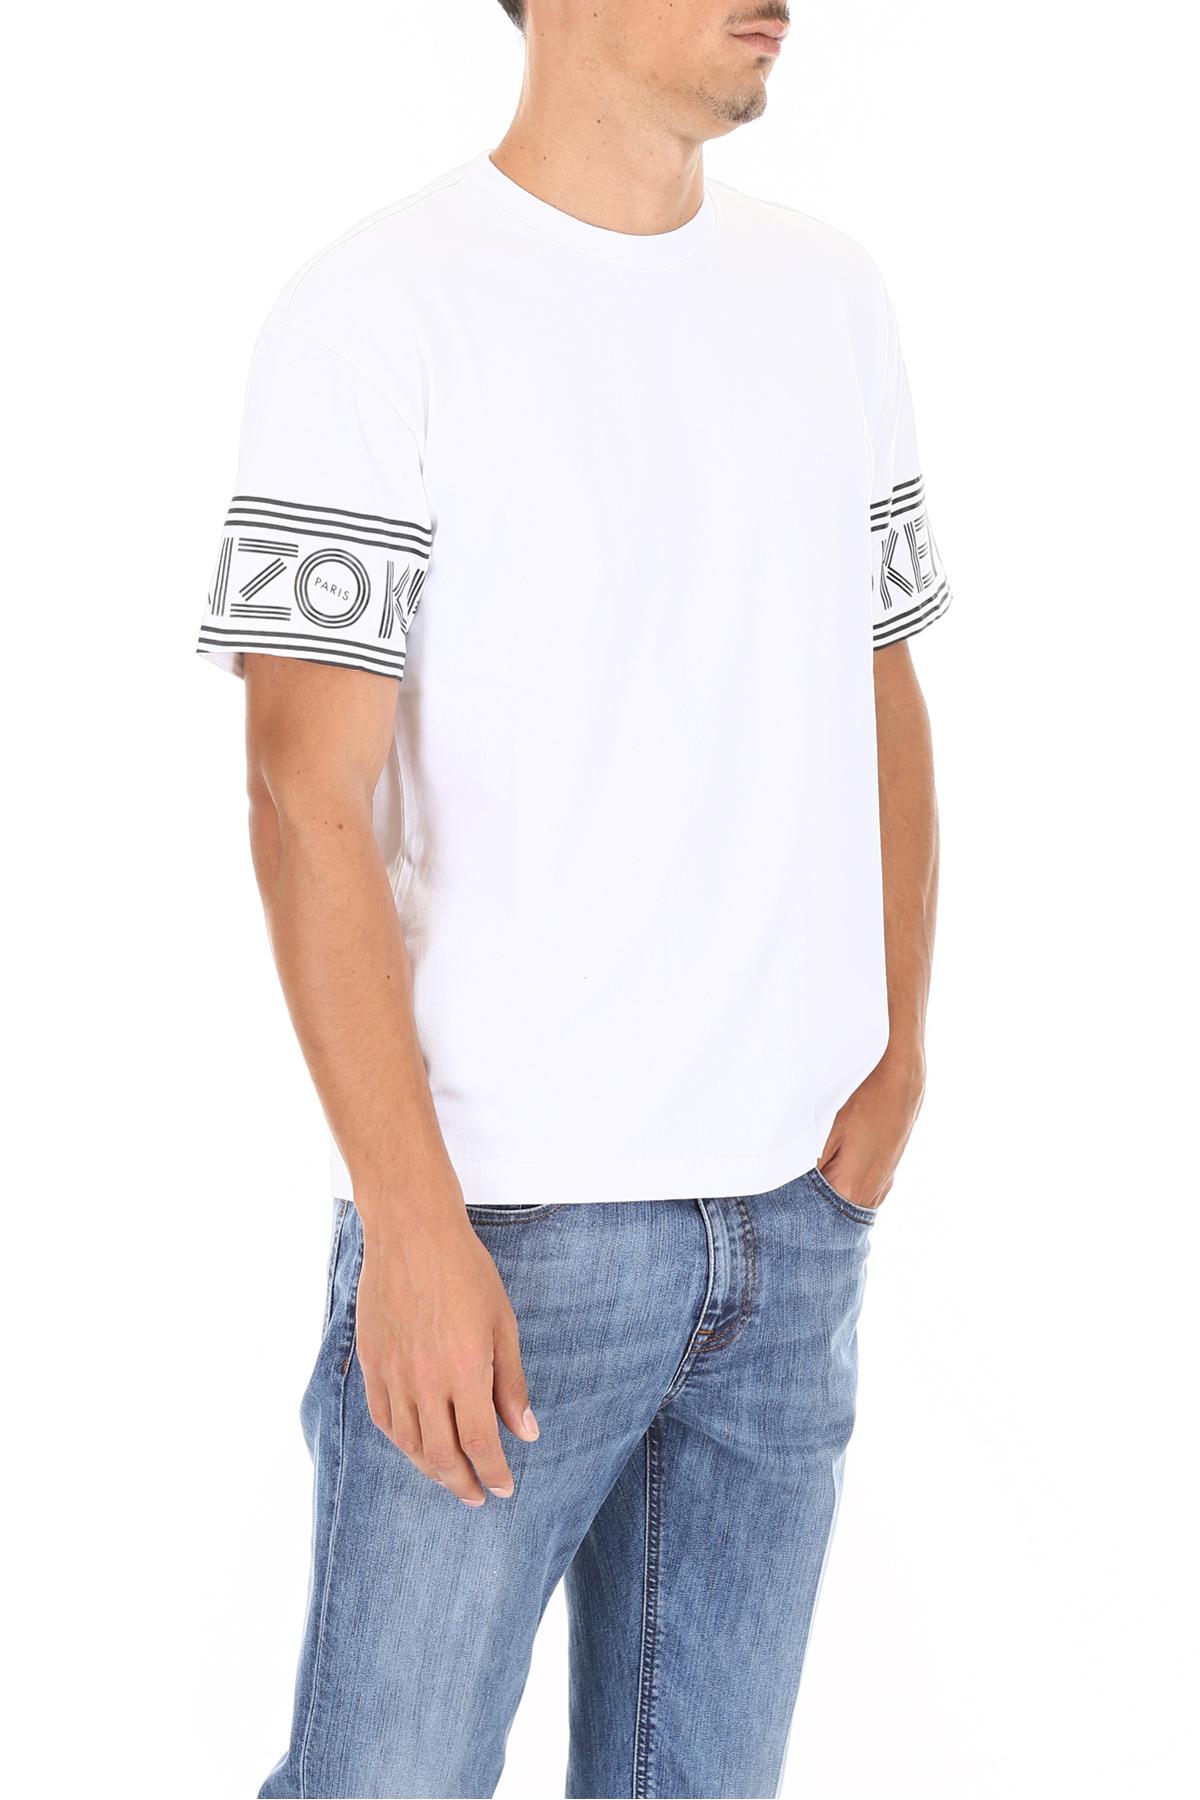 KENZO Cotton White Sleeve Logo T-shirt for Men - Lyst